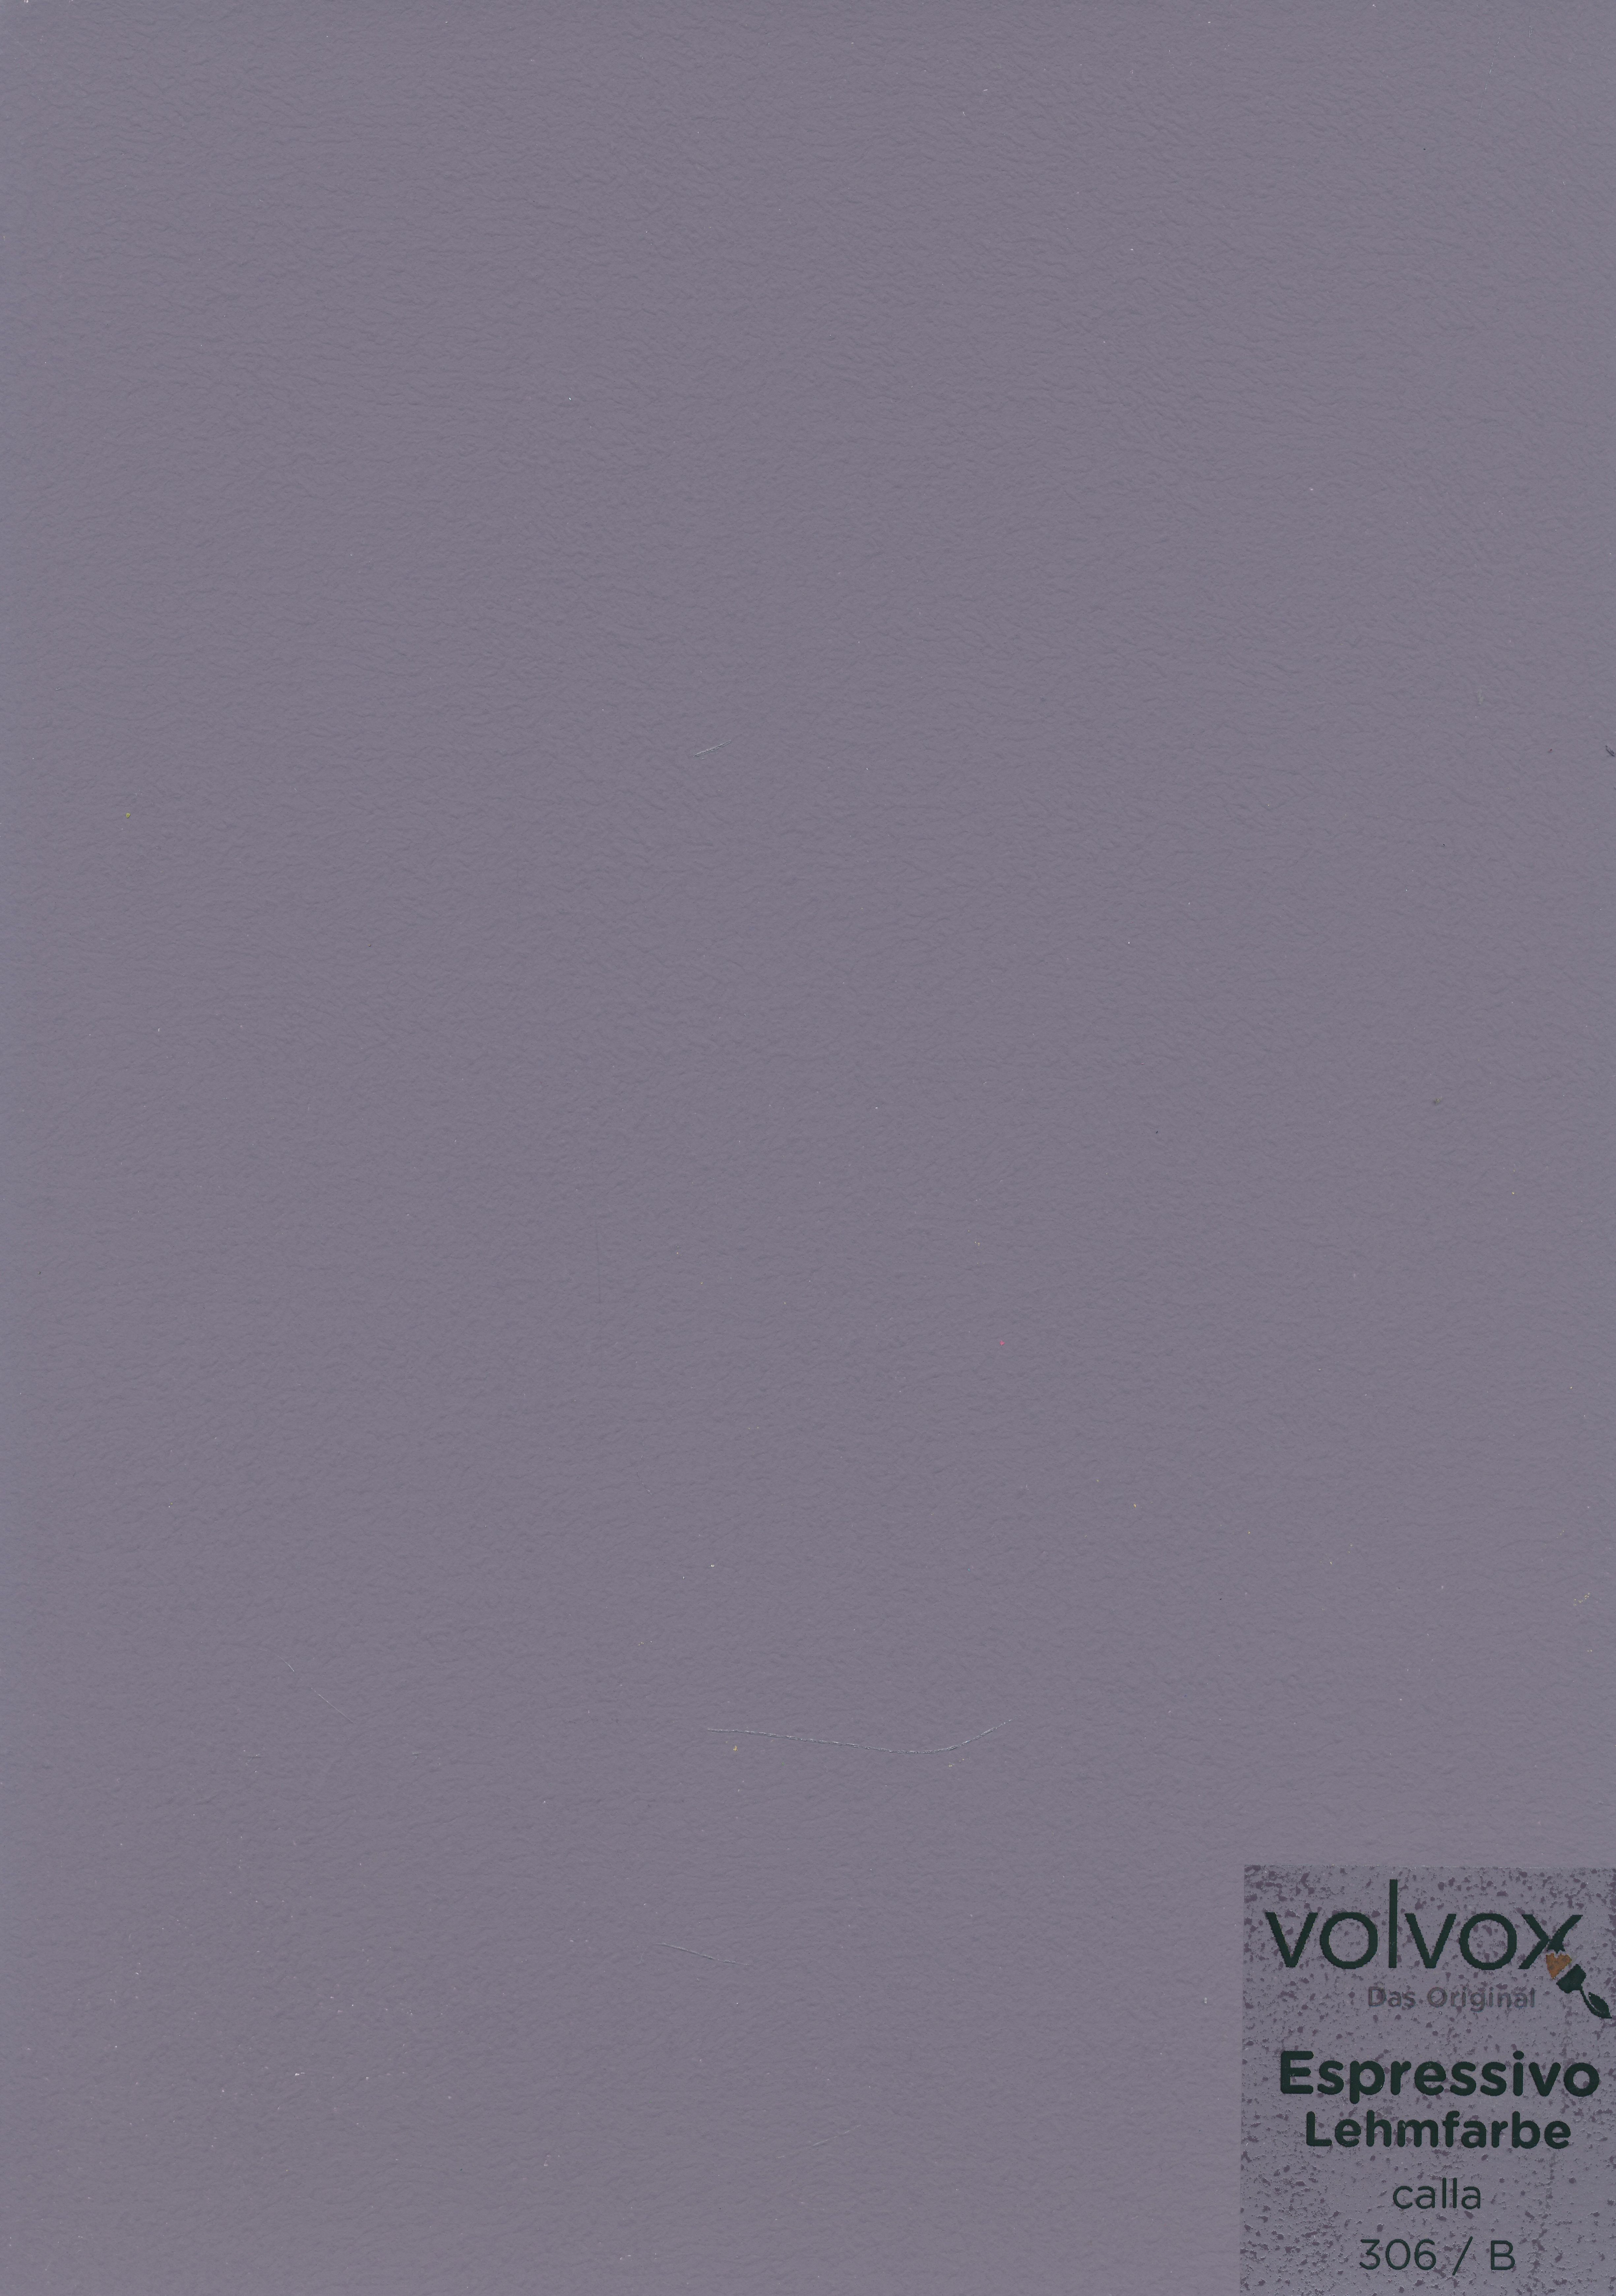 Volvox Espressivo Lehmfarbe 306 calla · 0,9ltr.